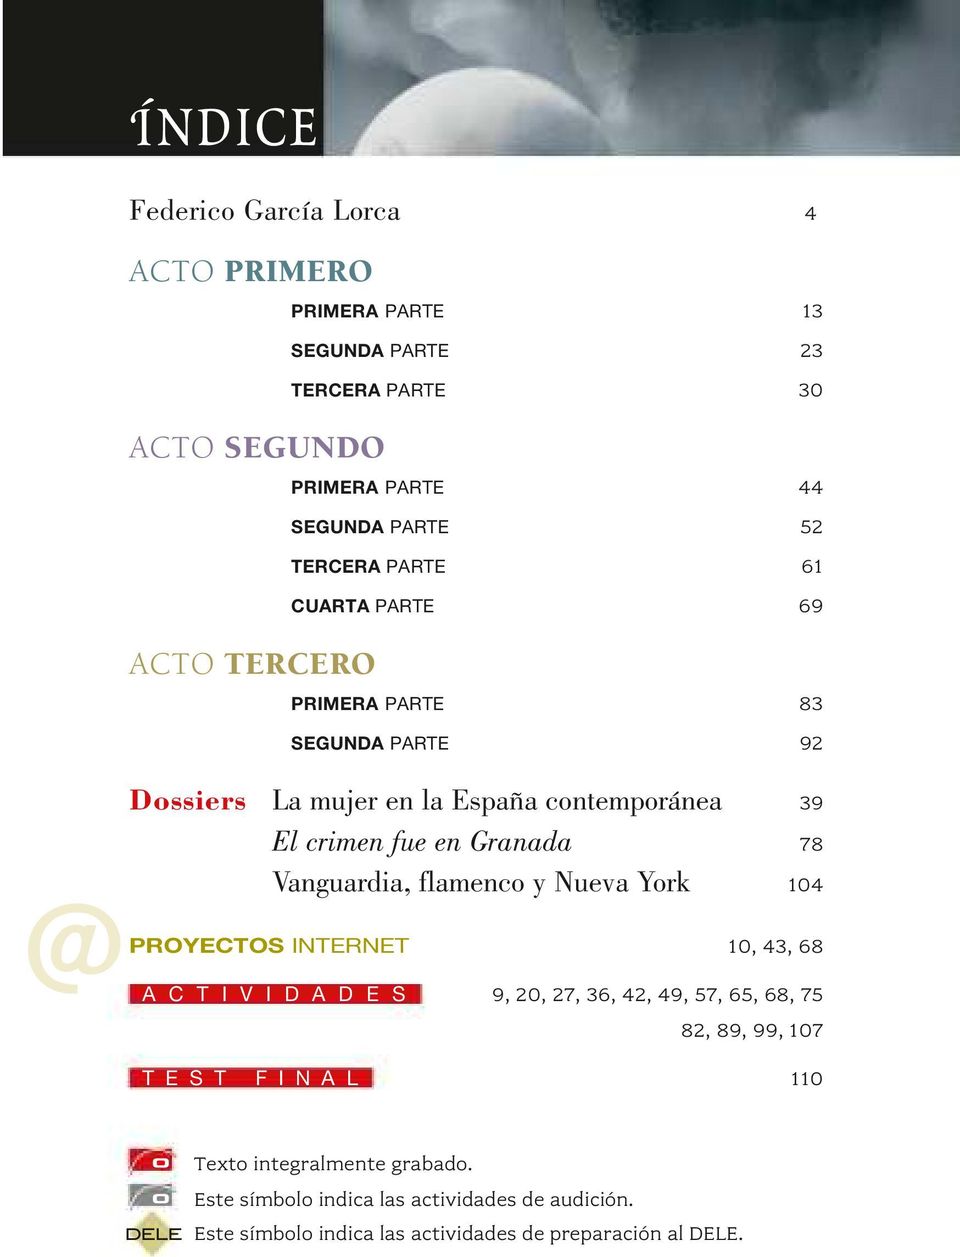 Vanguardia, flamenco y Nueva York 104 PROYECTOS INTERNET 10, 43, 68 A C T I V I D A D E S 9, 20, 27, 36, 42, 49, 57, 65, 68, 75 82, 89, 99, 107 TEST